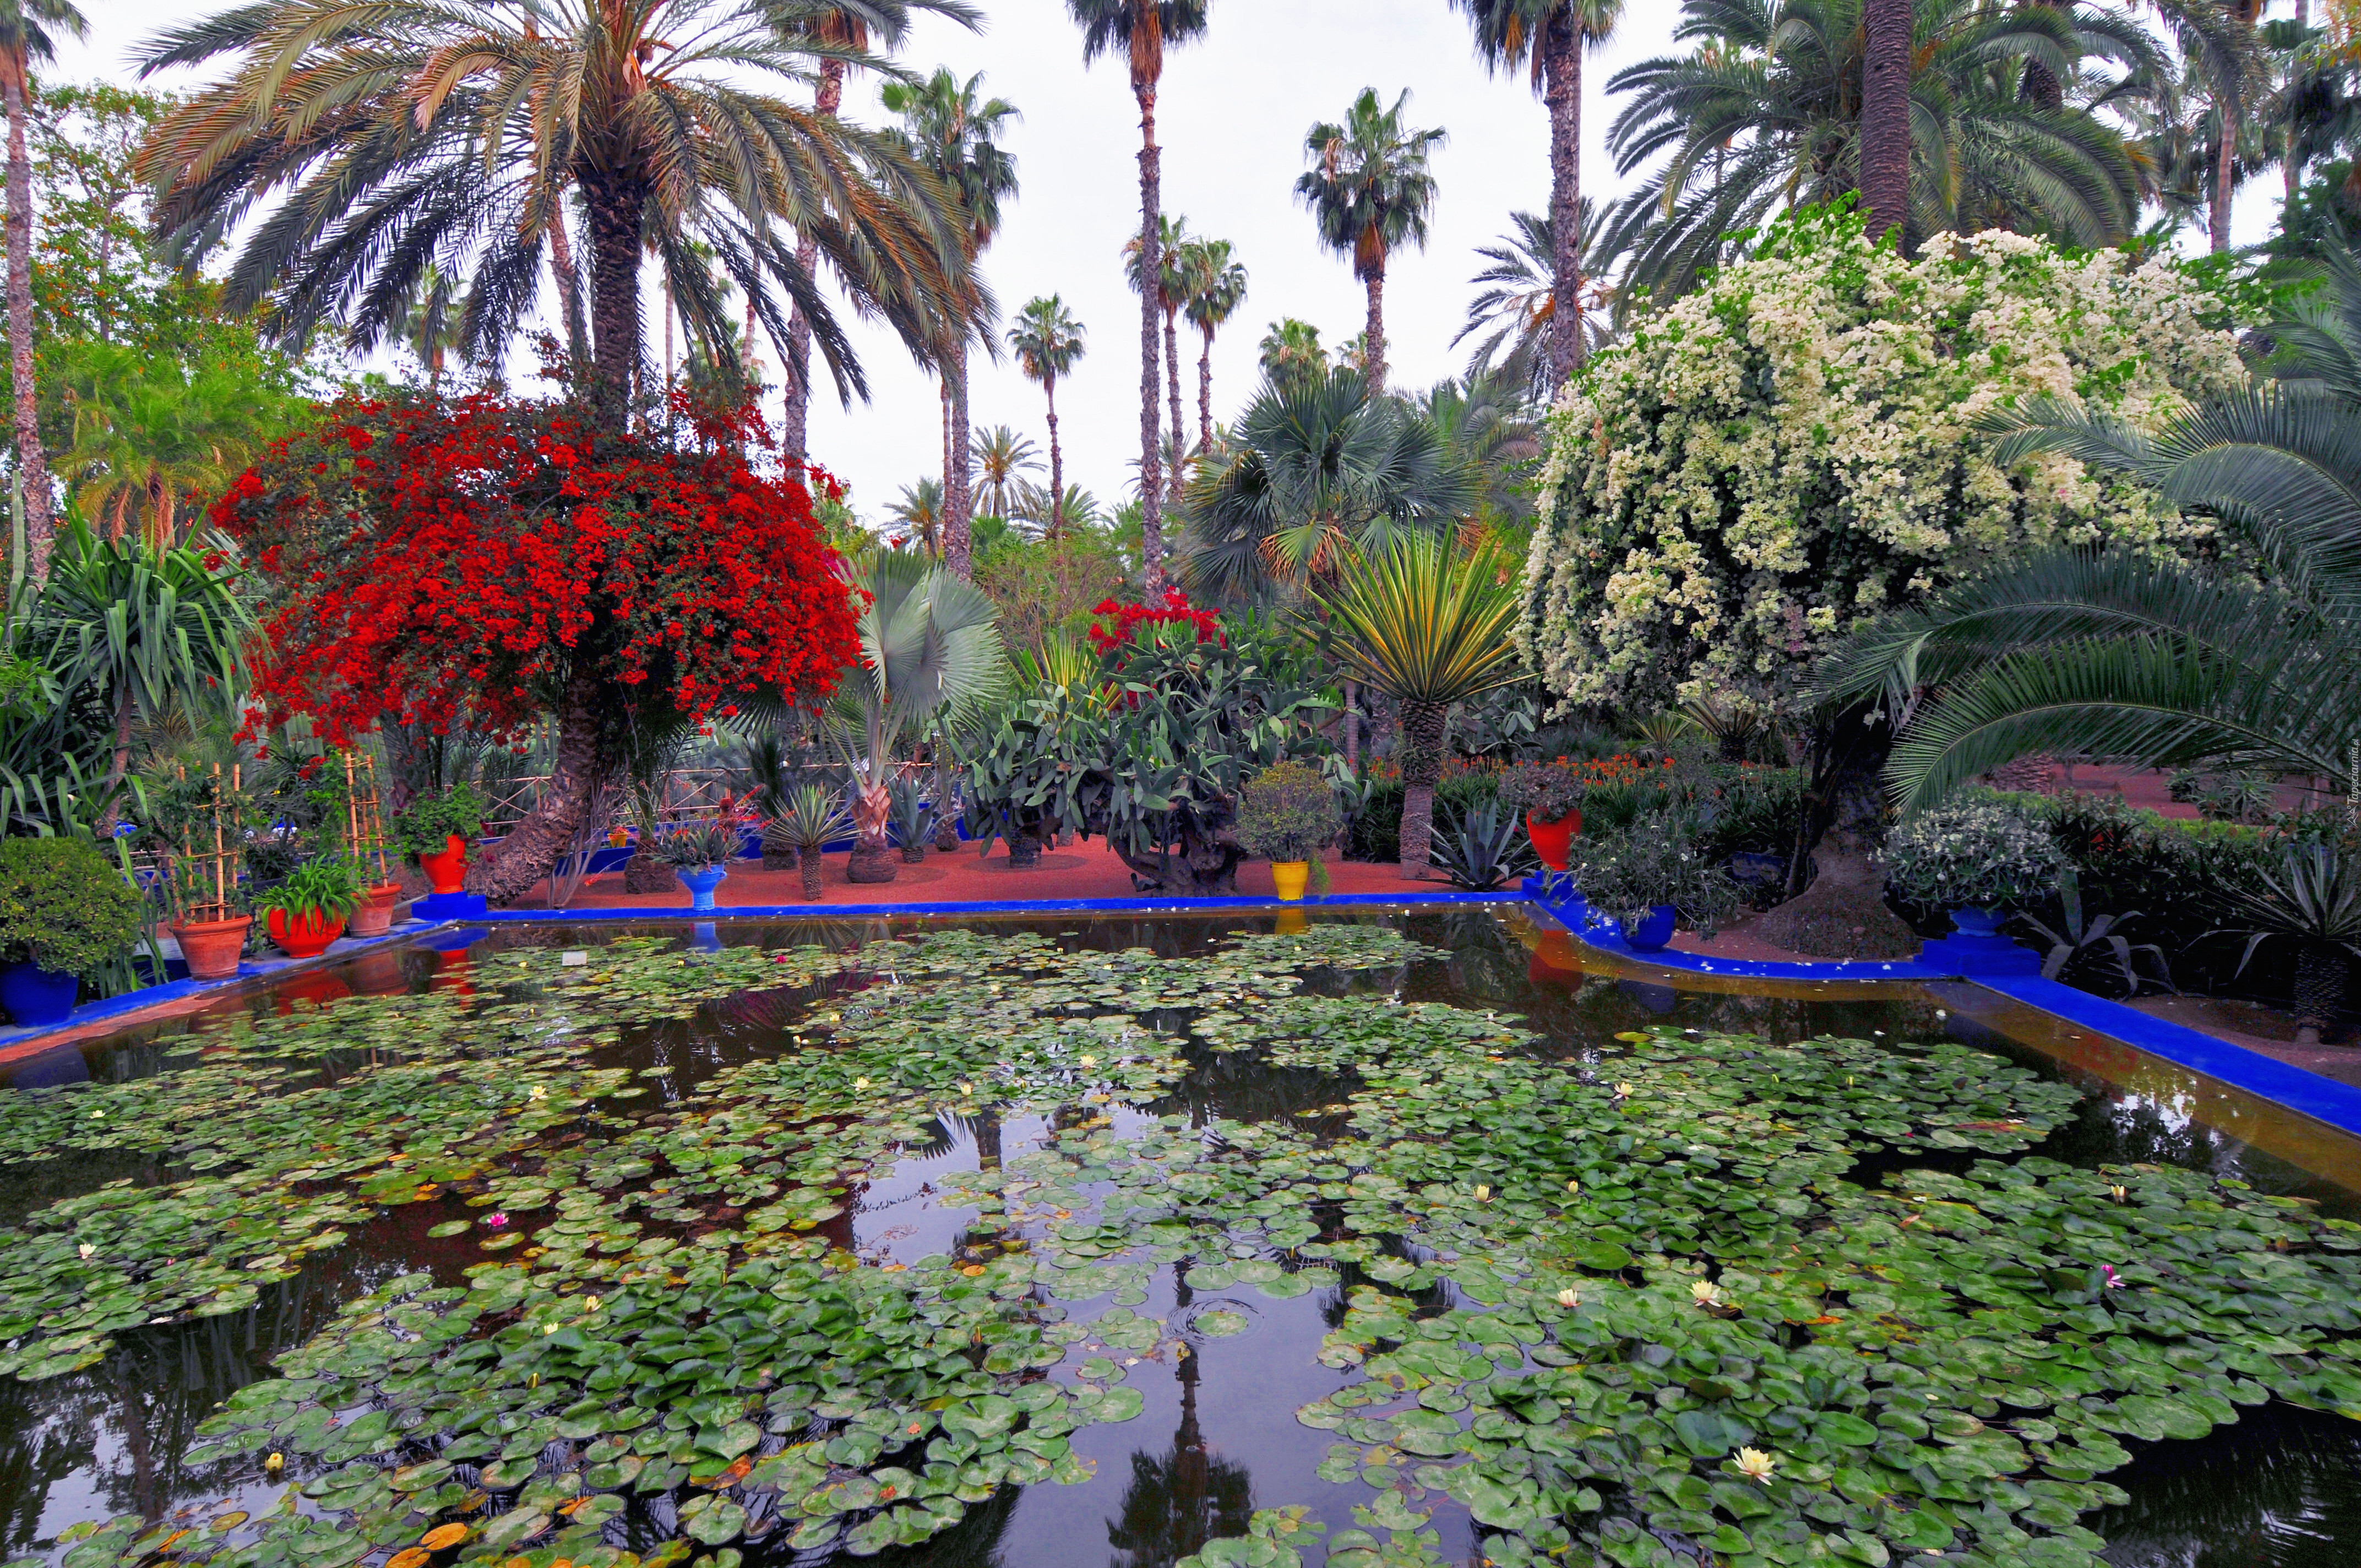 Piękny, Ogród, Staw, Majorelle, Marakesz, Maroko